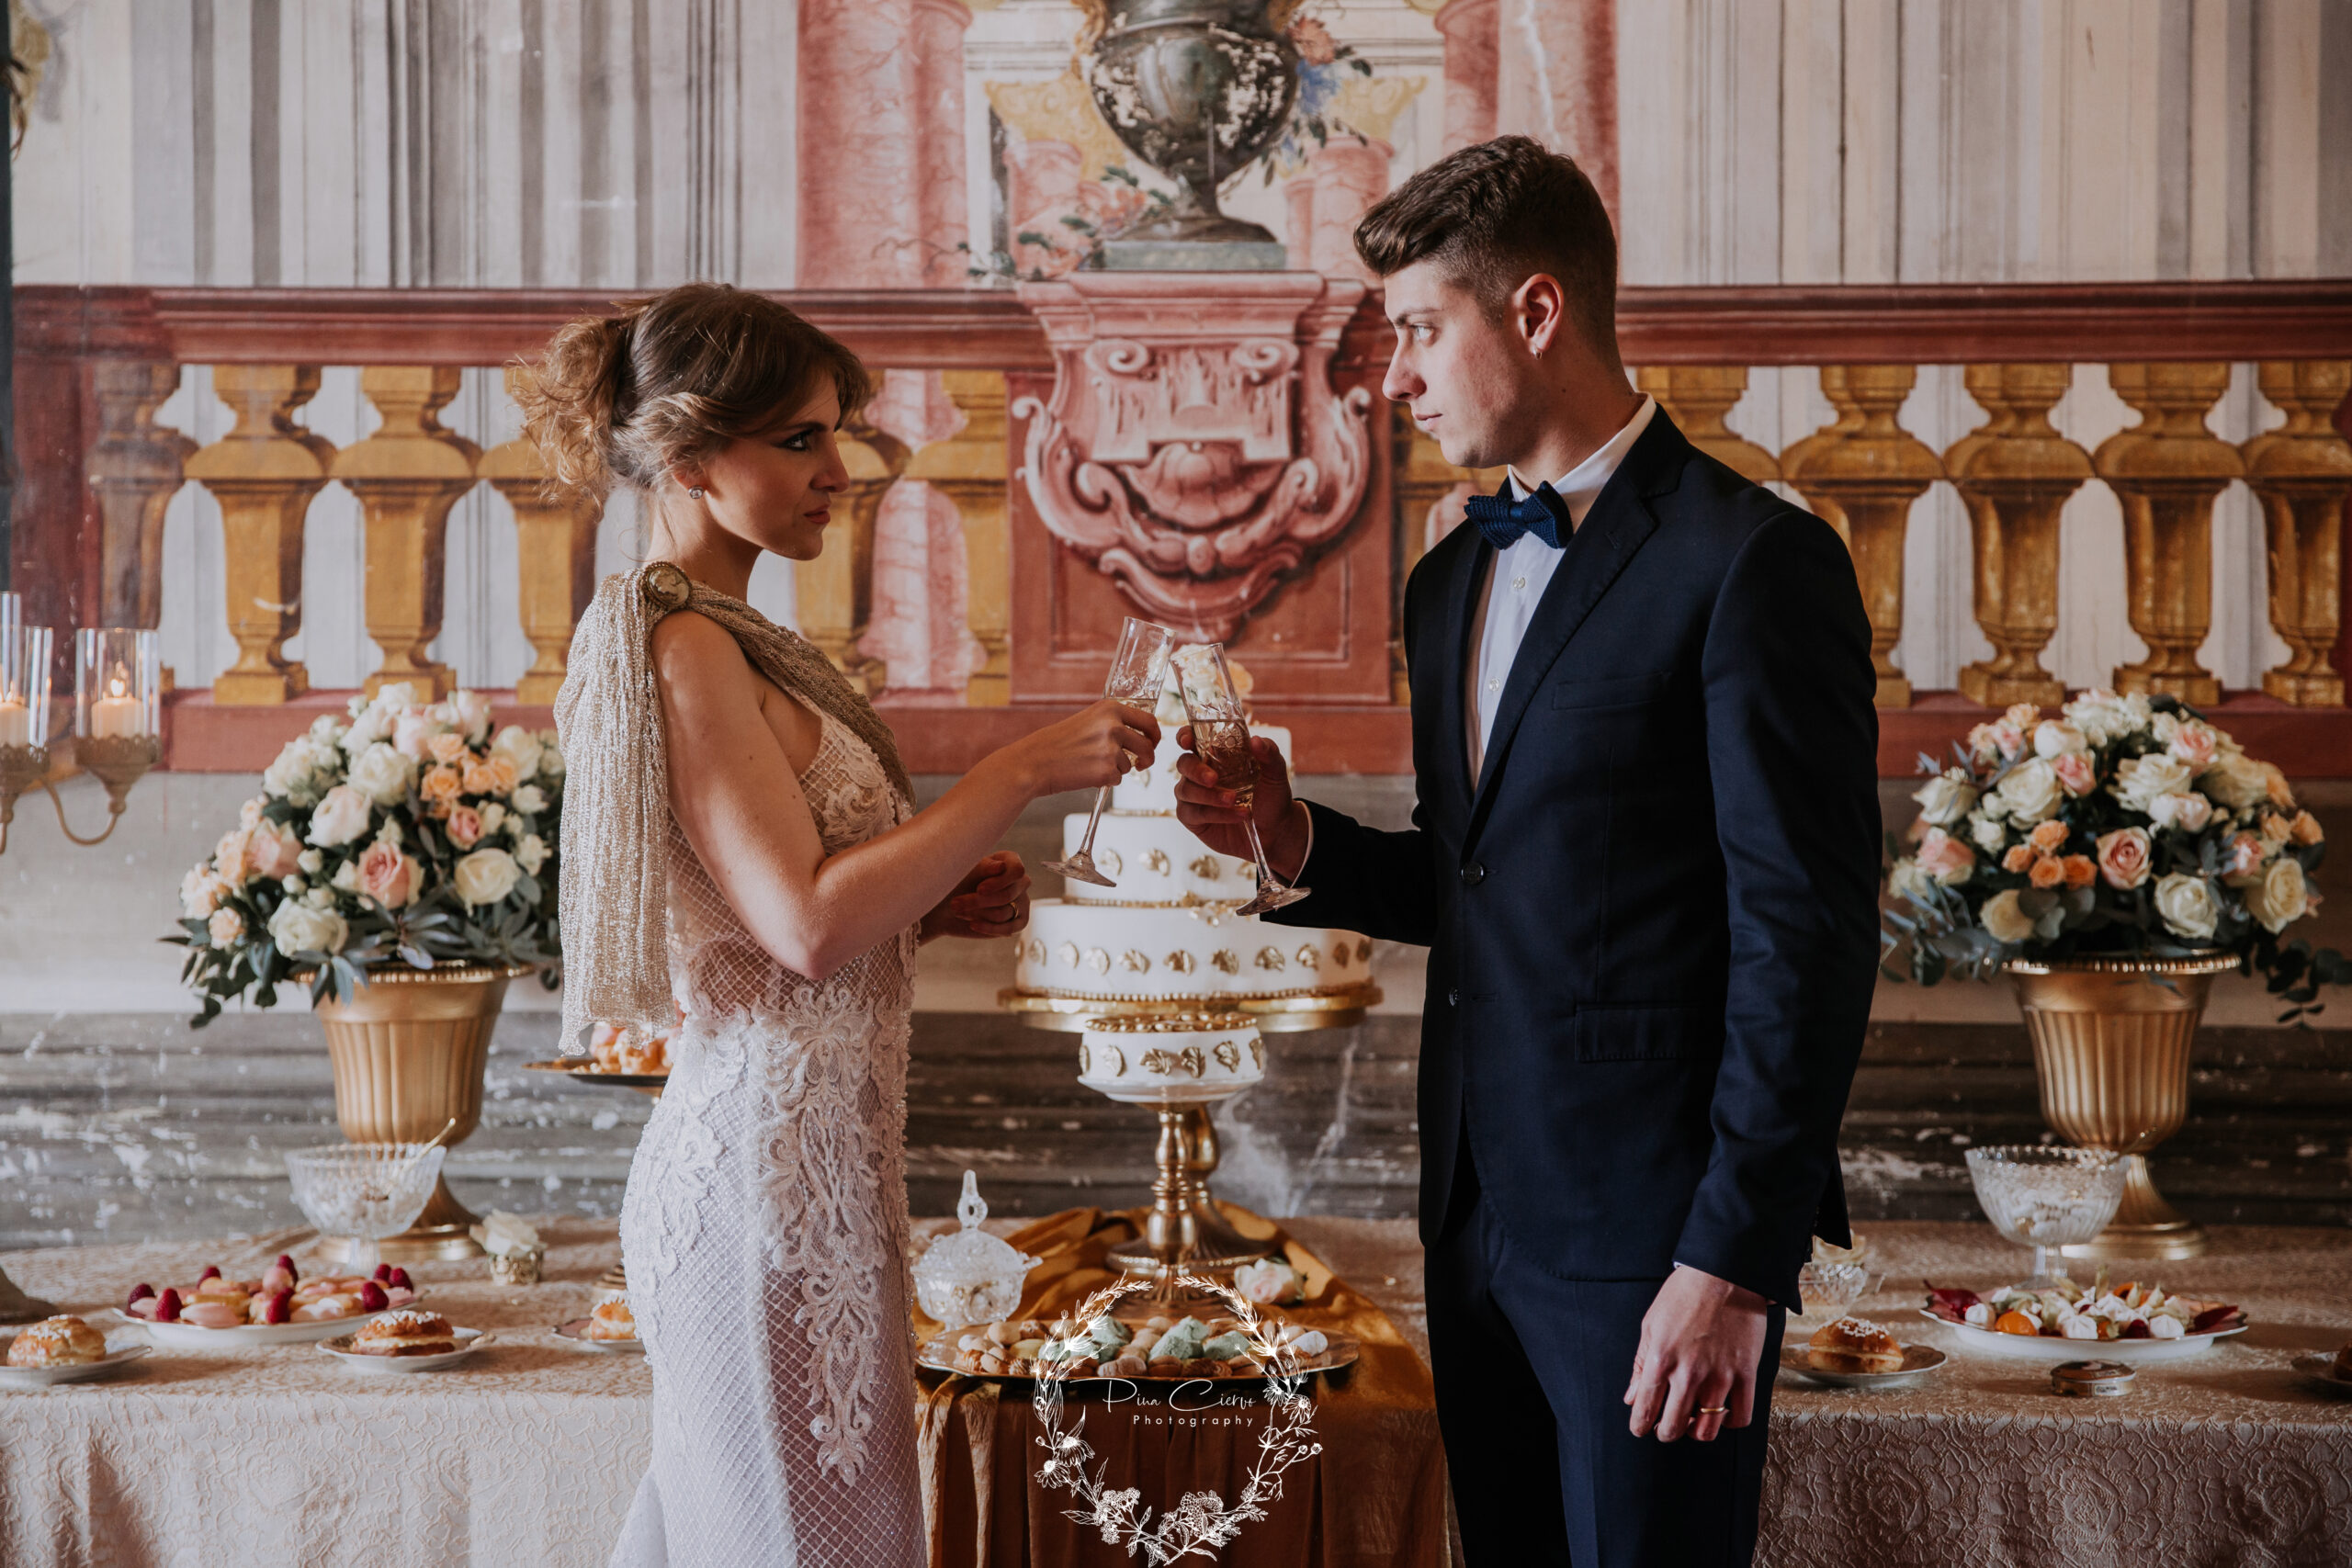 Wedding in a baroque villa